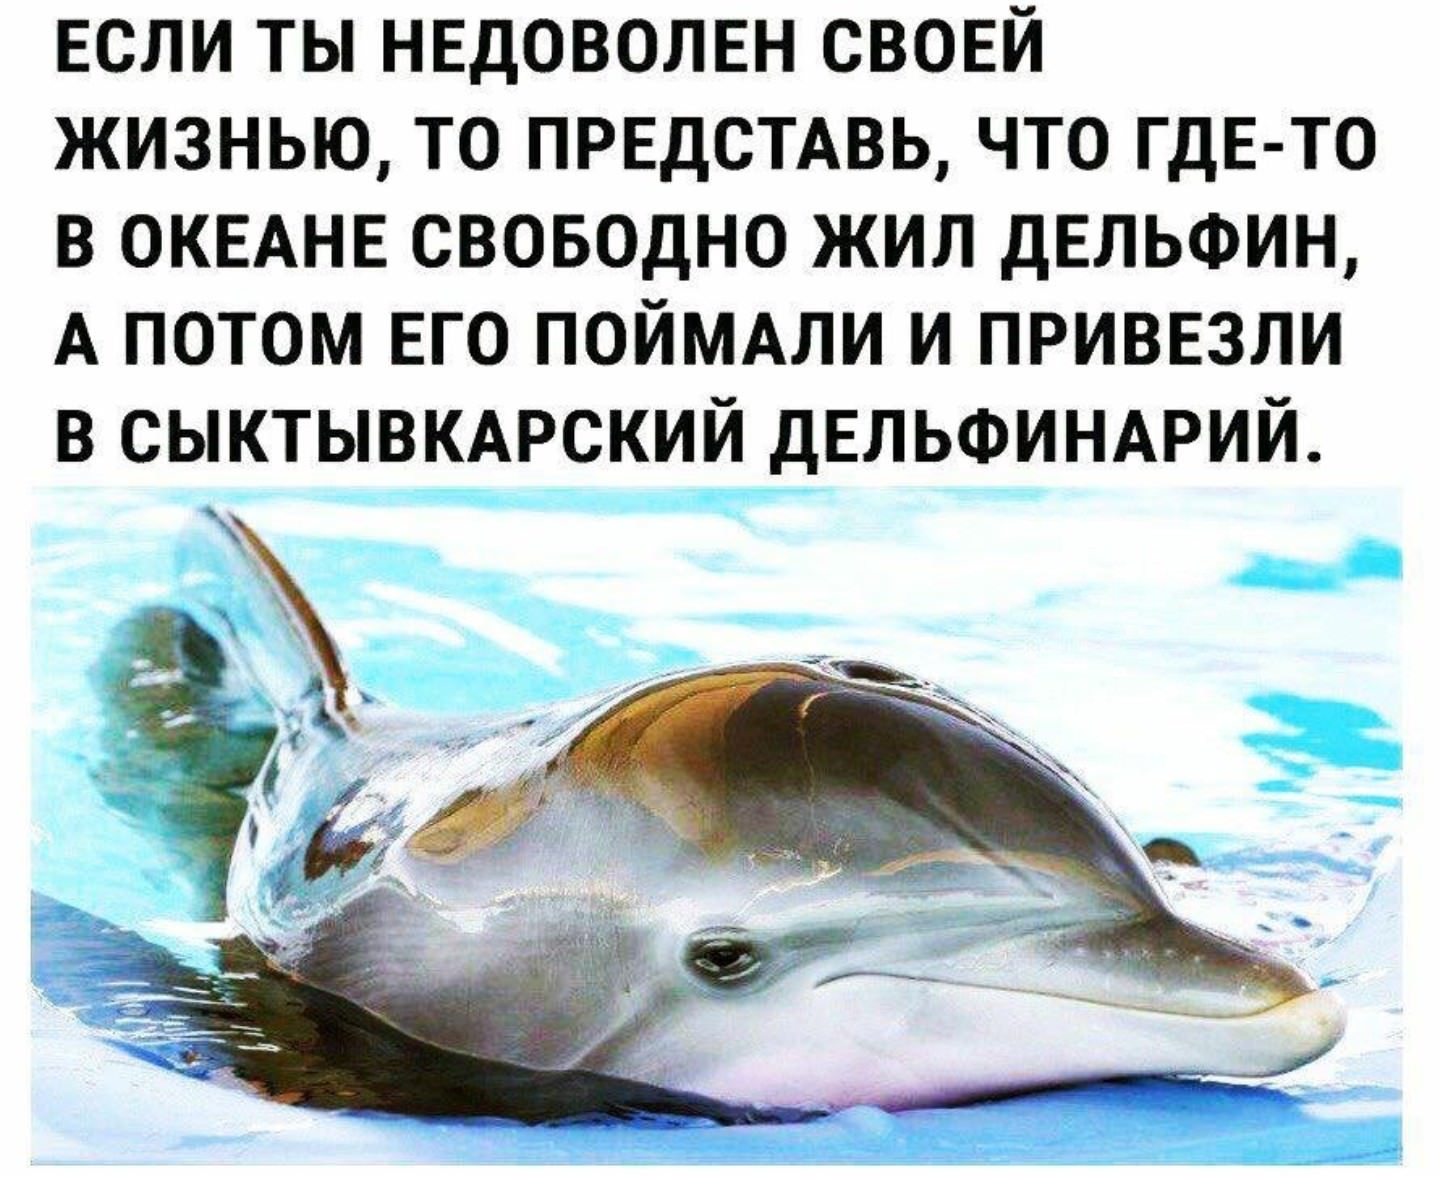 Дельфин живет лет. Шутки про дельфинов. Где живут дельфины в дельфинарии. Где обитает Дельфин. Сыктывкарский дельфинарий.